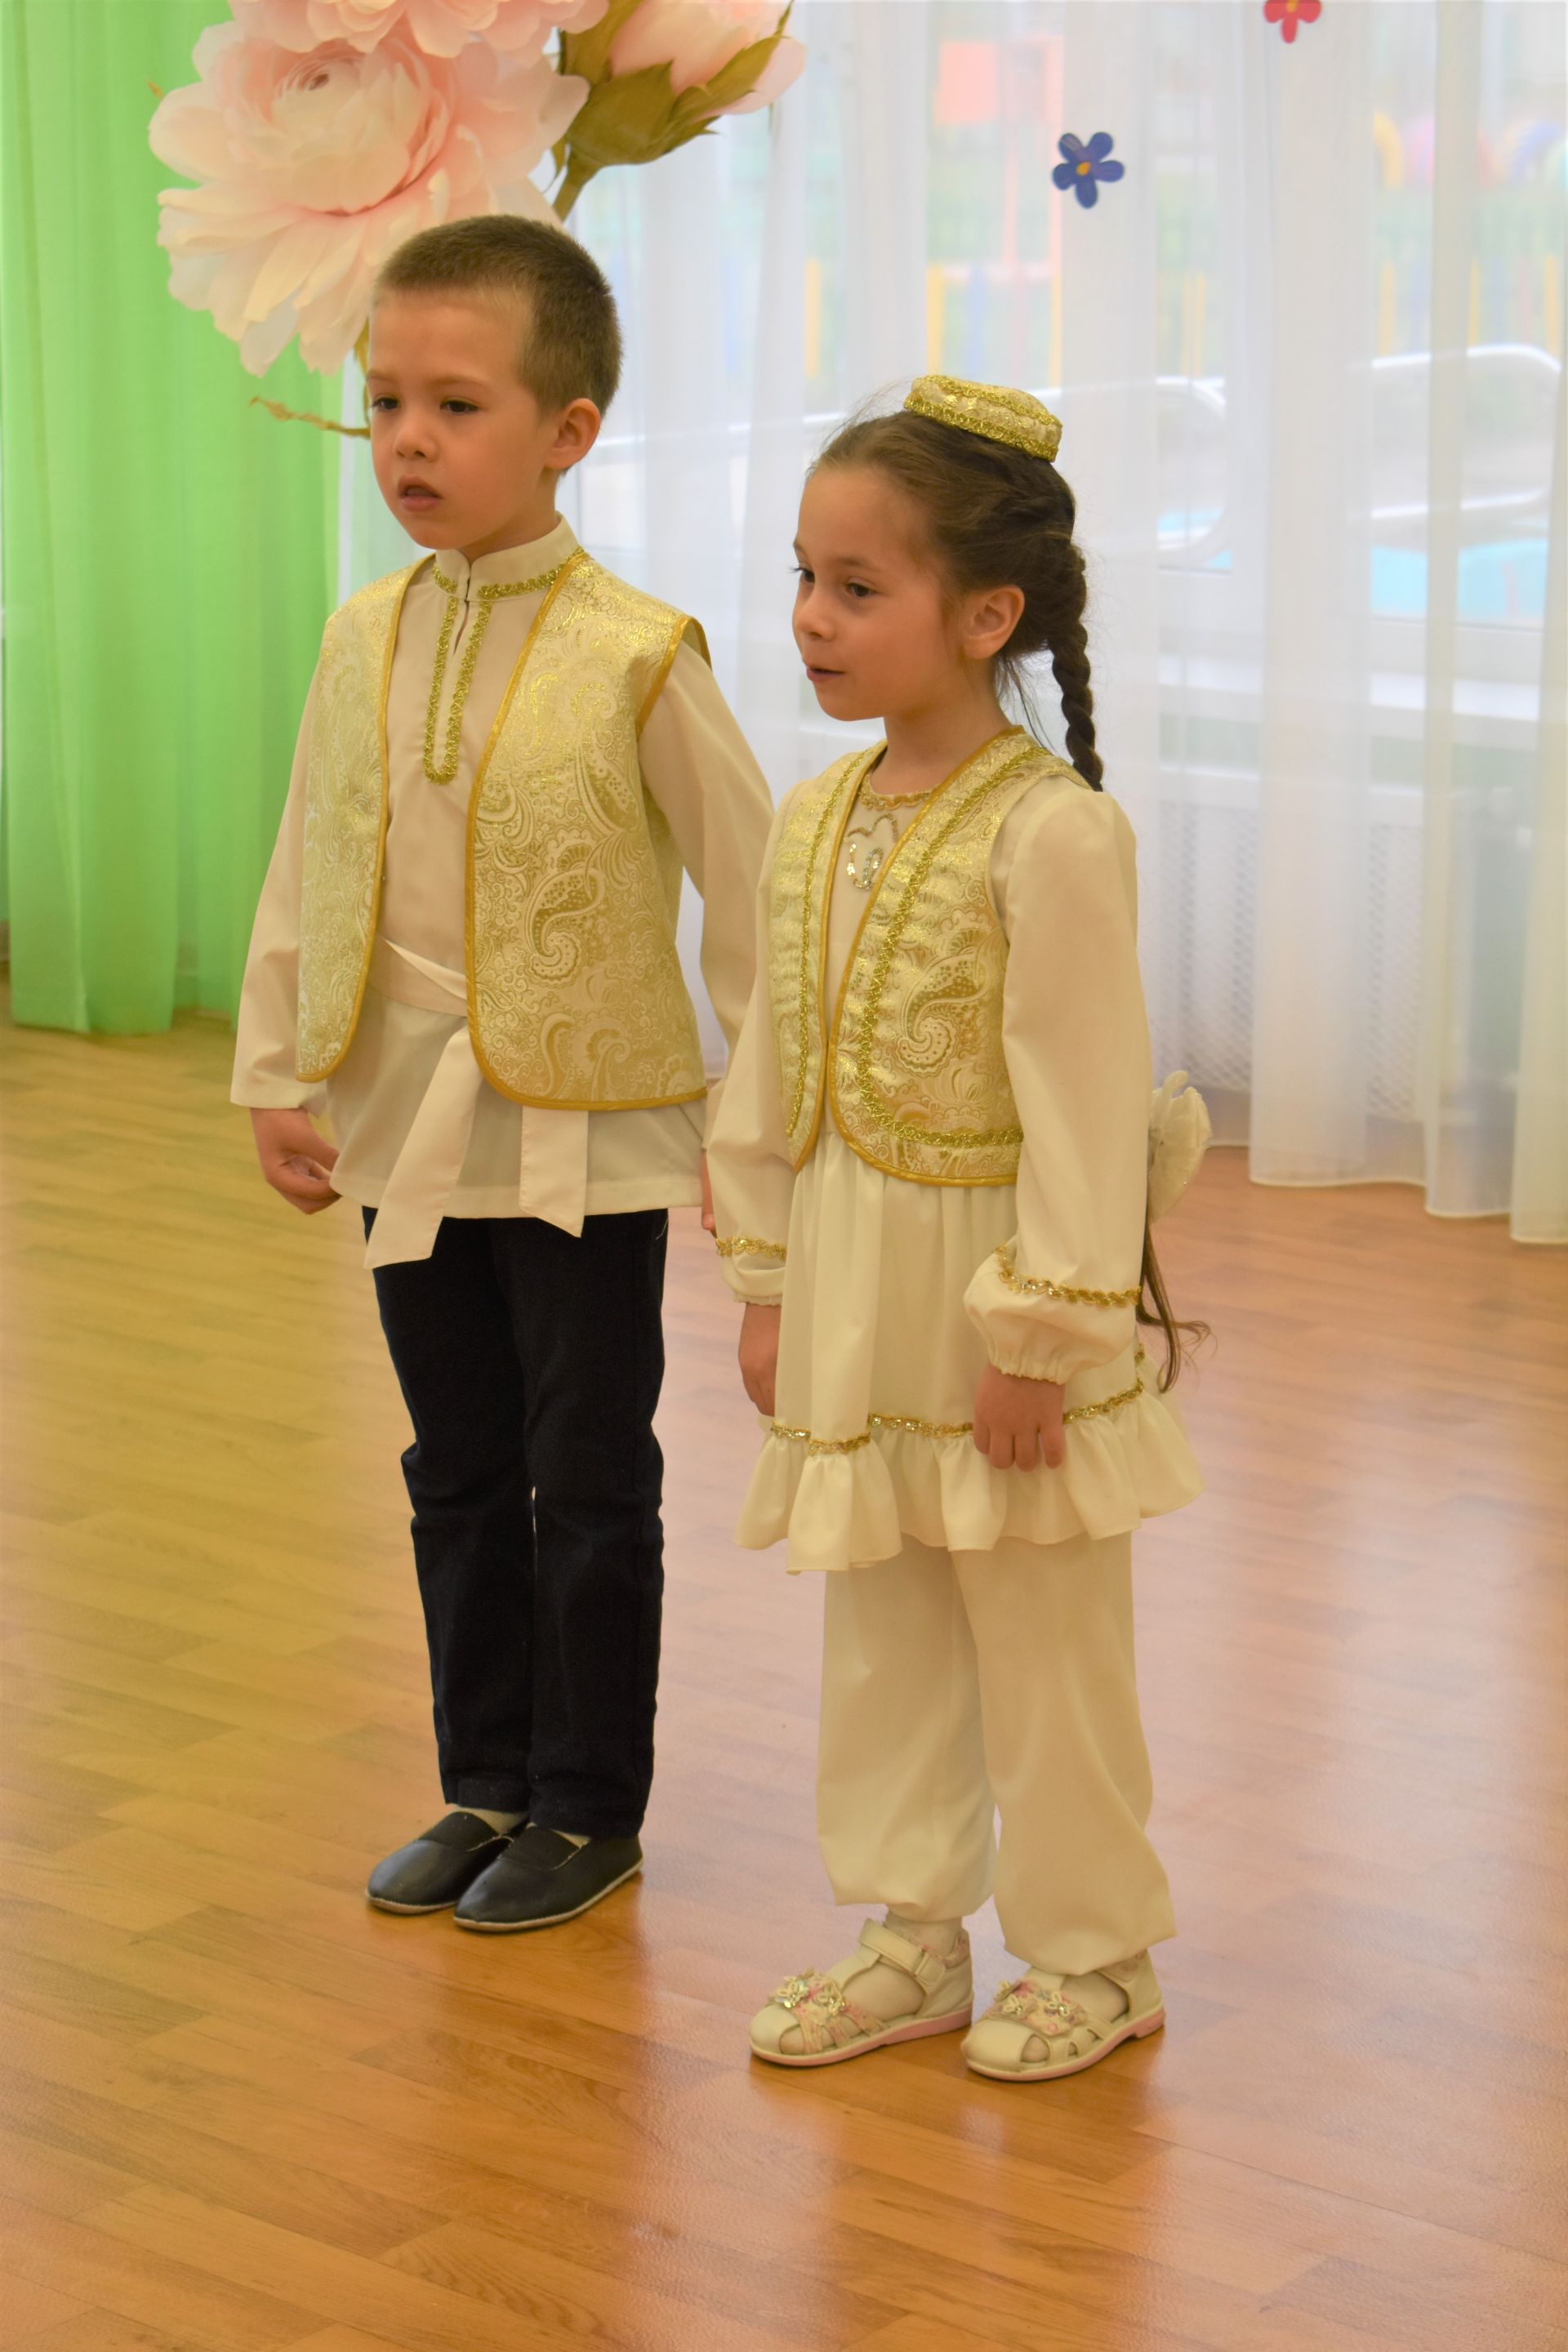 Праздник ко дню рождения татарского поэта в детском саду «Огонёк»